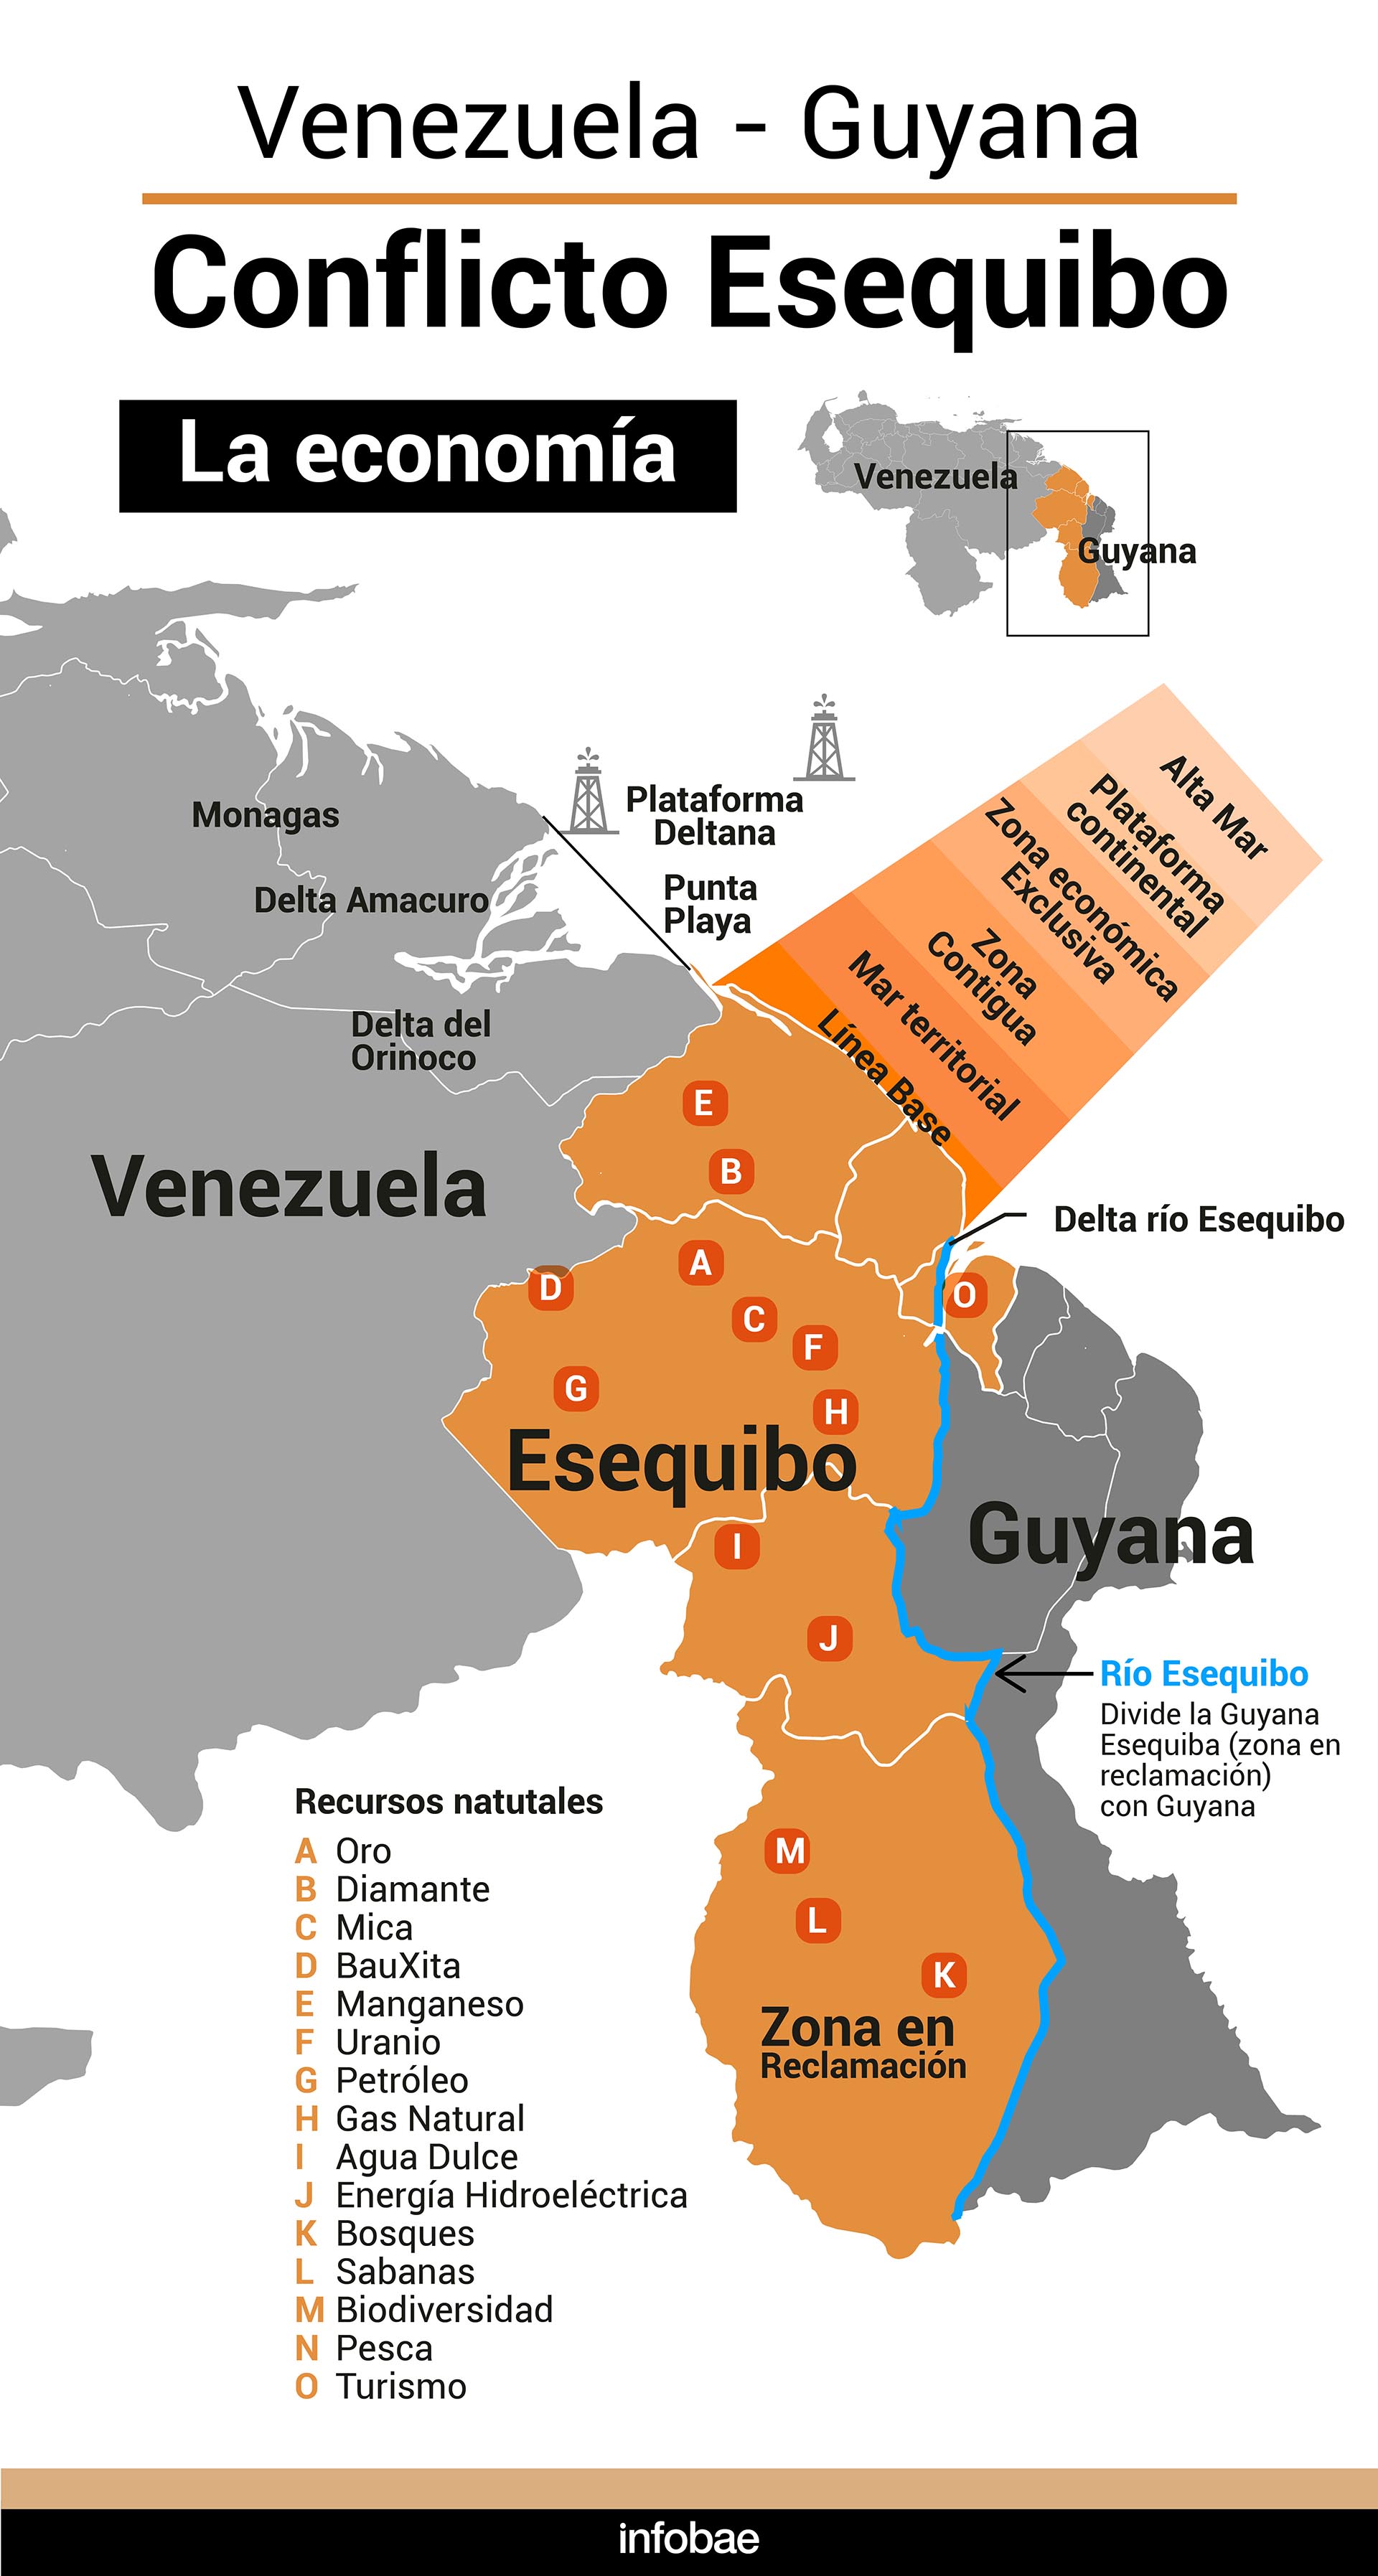 Viajar a Venezuela - Foro América del Sur